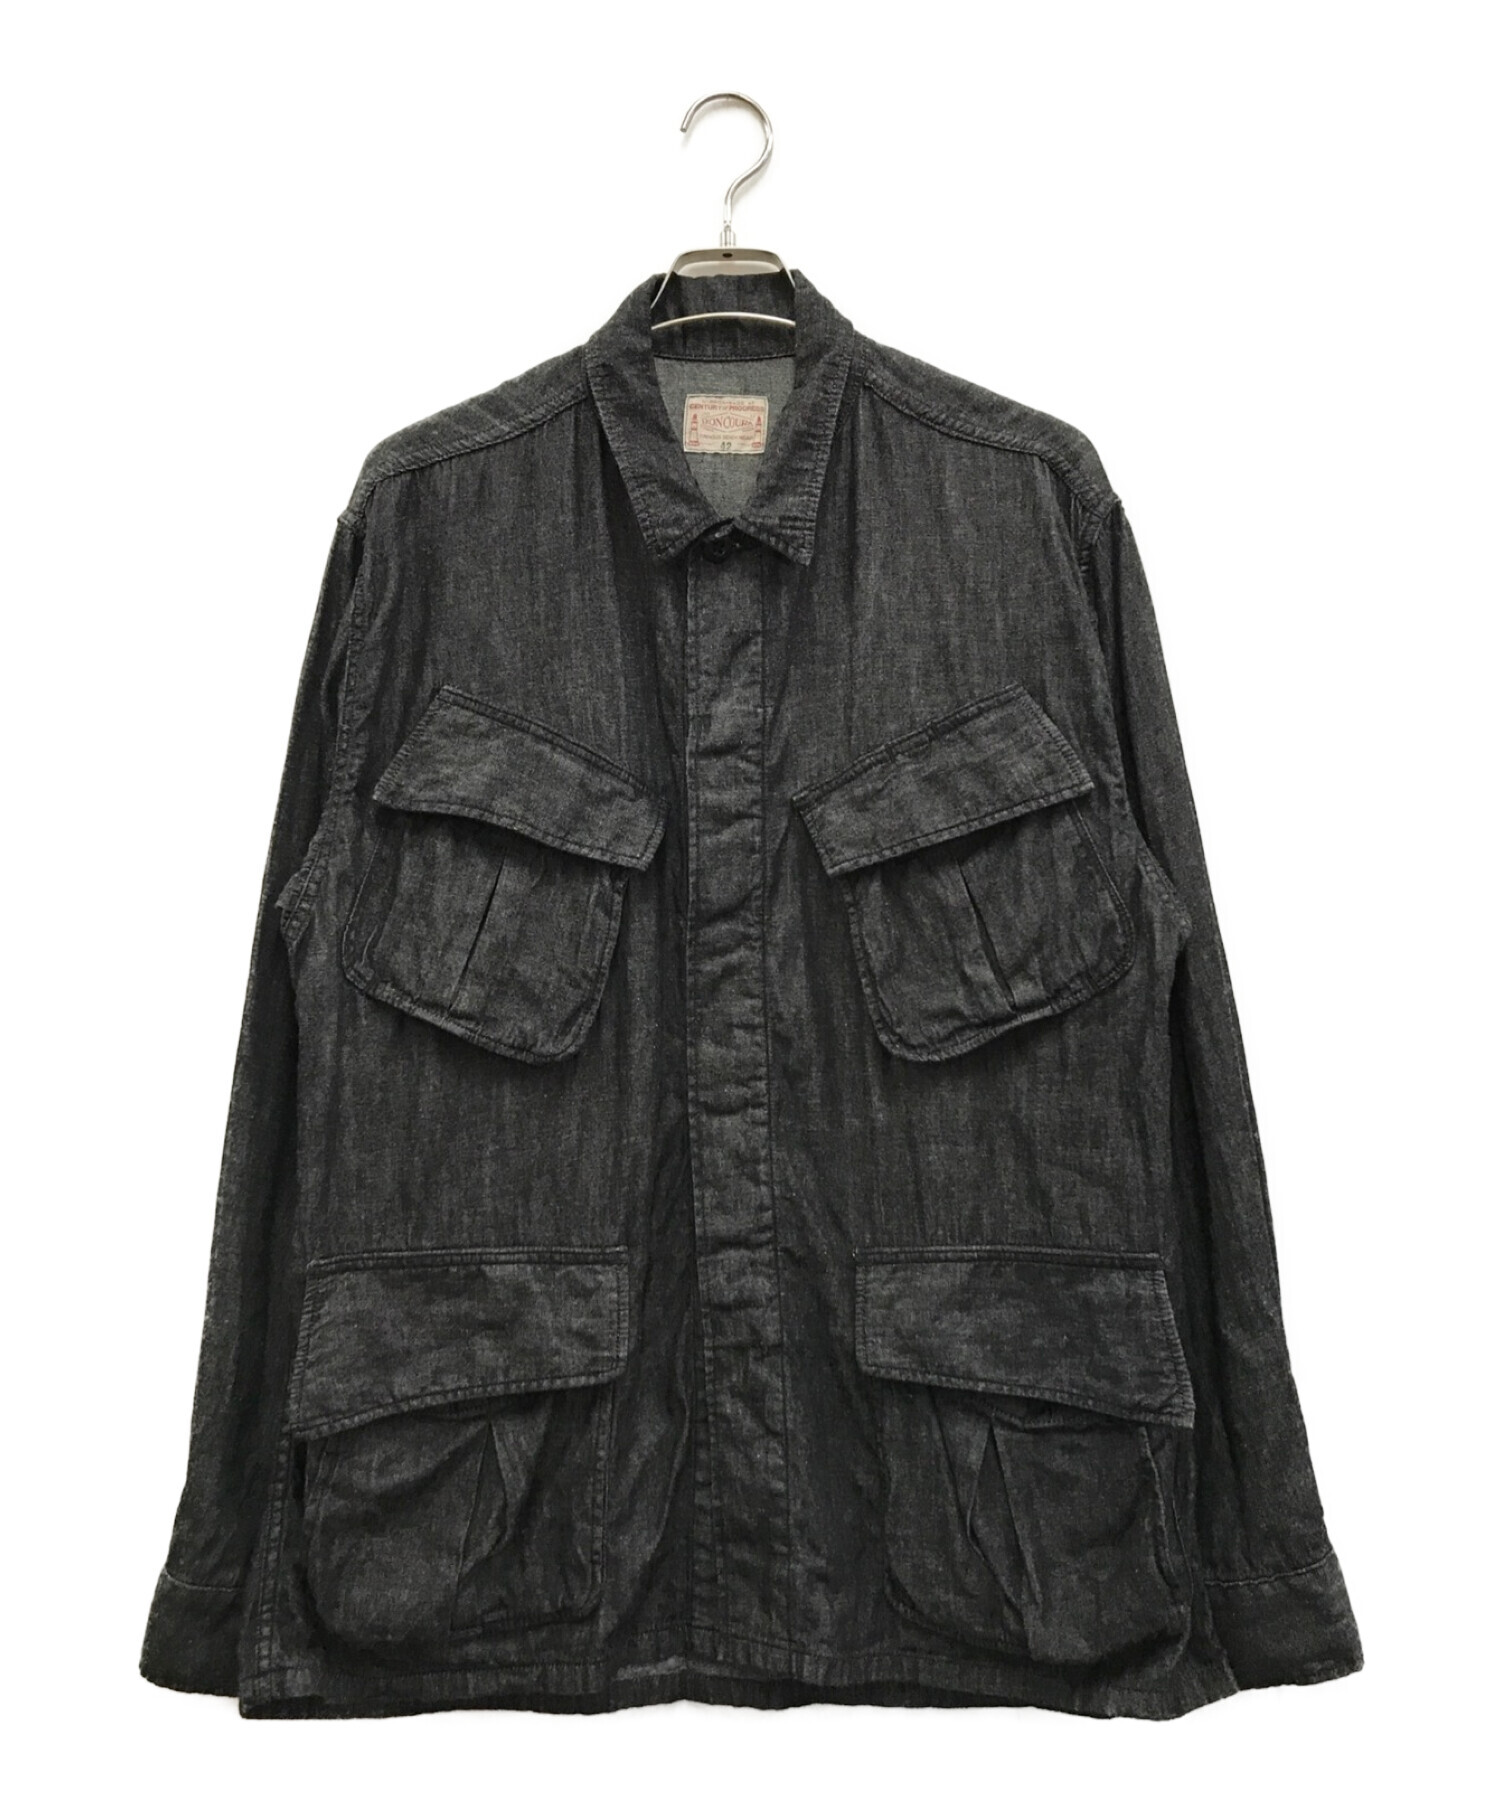 BONCOURA (ボンクラ) リネン混ジャングルファティーグジャケット ブラック サイズ:42